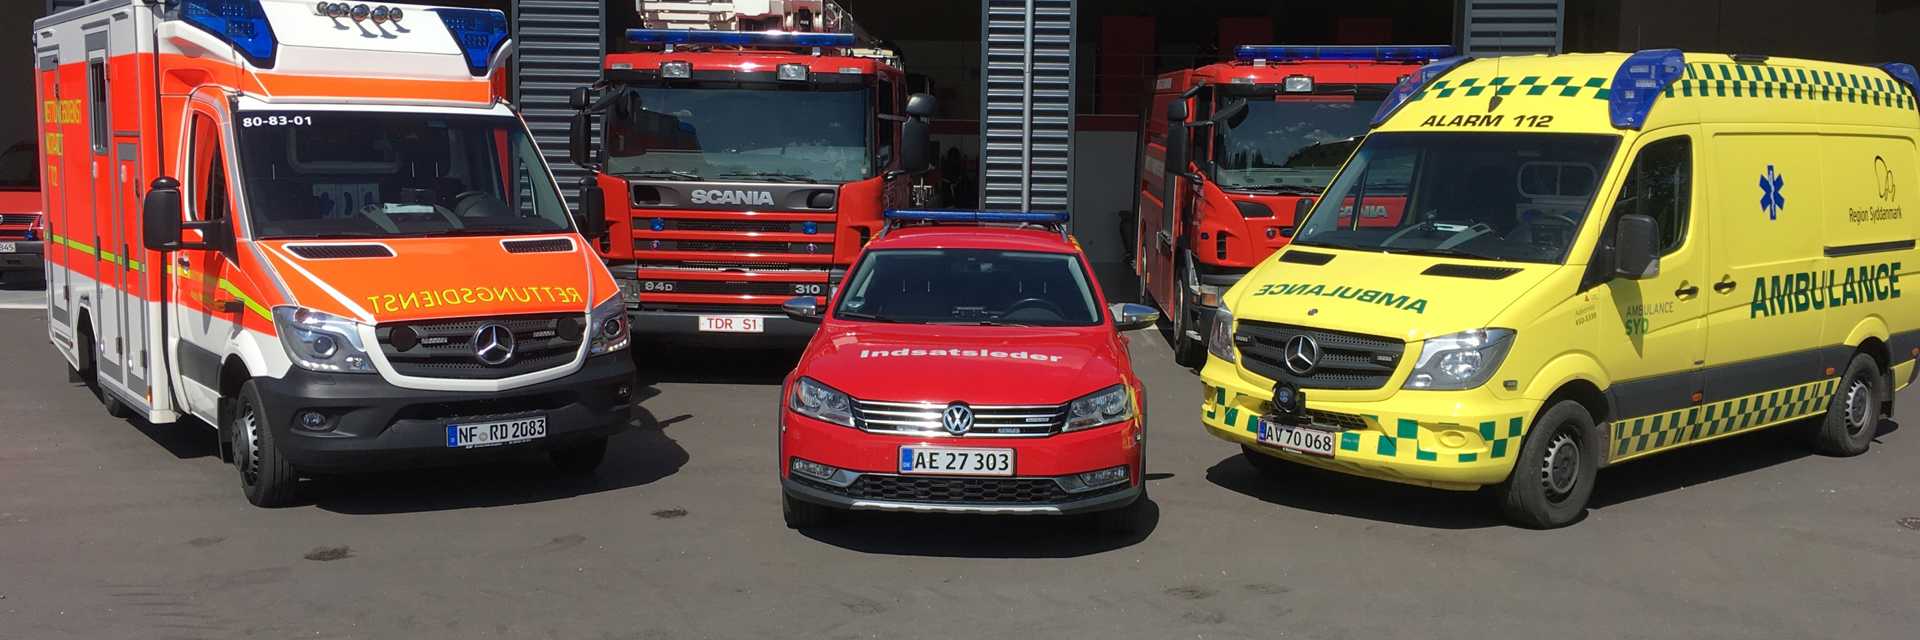 Brandbiler og ambulancer foran brandstation